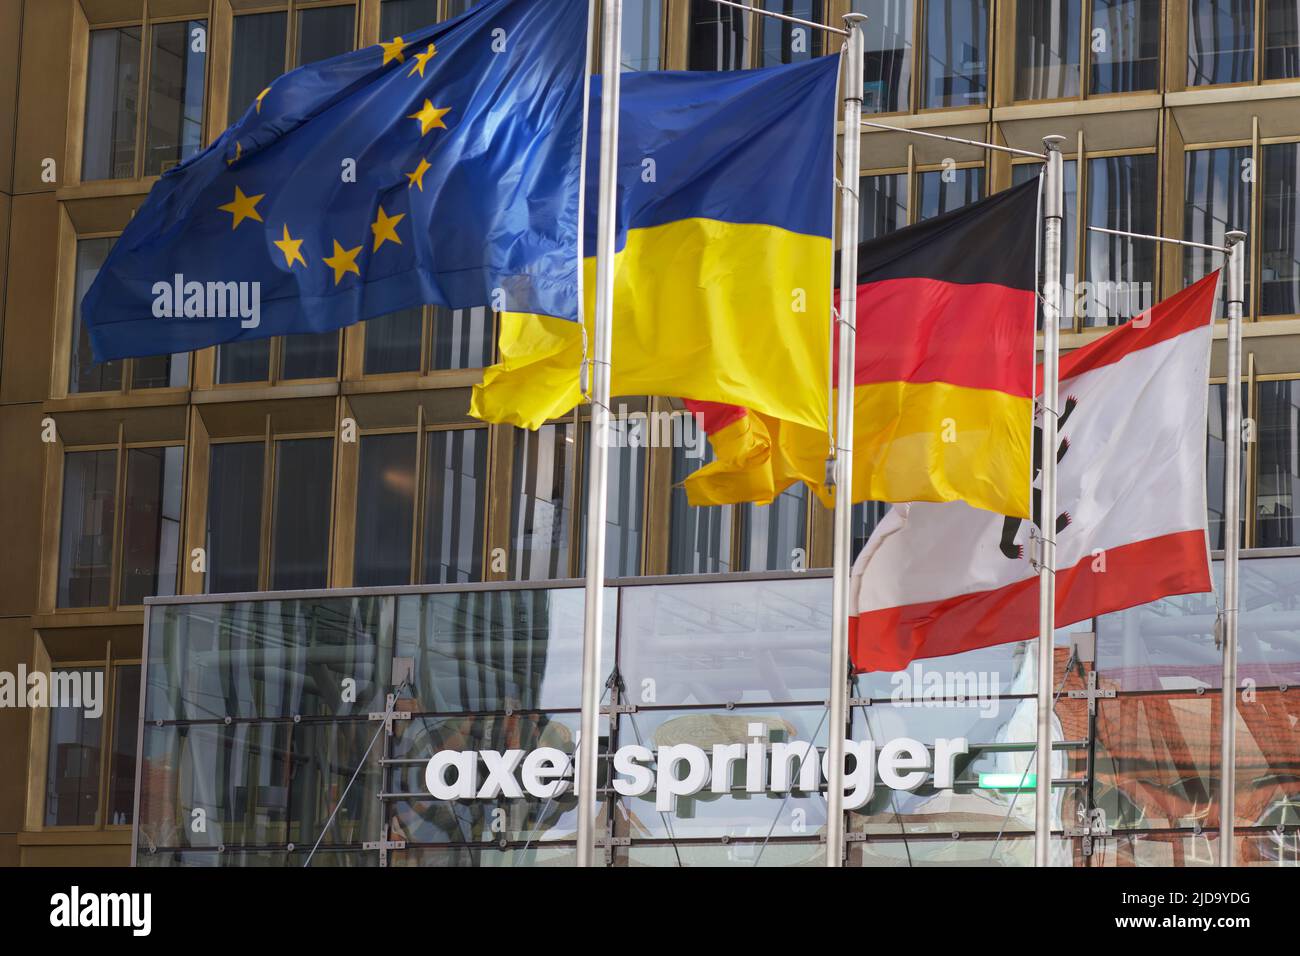 Entrada de la editorial Axel Springer con cuatro banderas: UE, Ucrania, Alemania, Berlín. Foto de stock